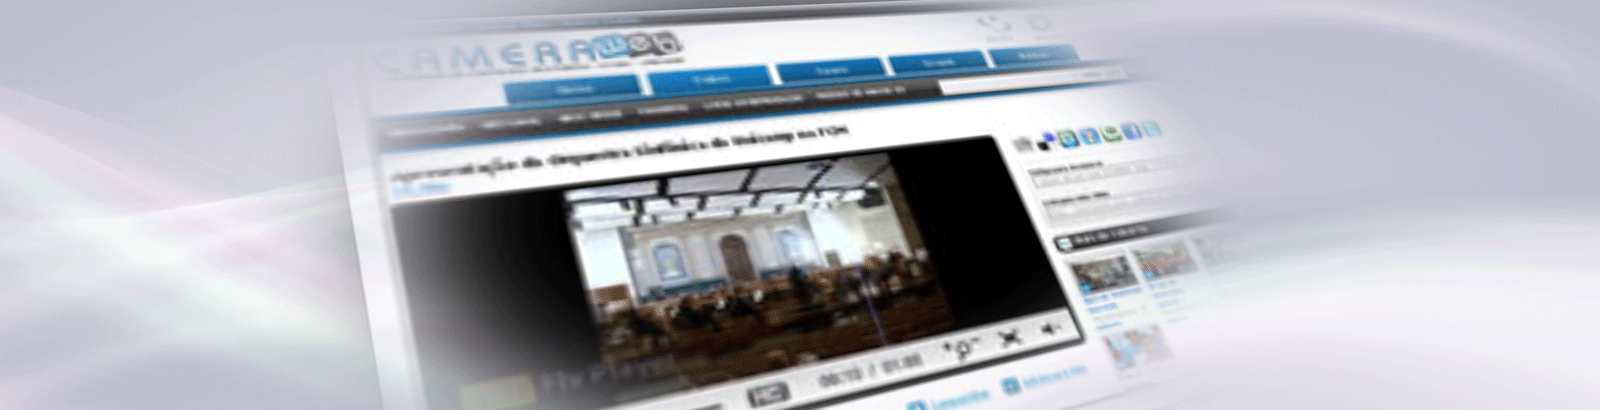 CCUEC disponibiliza novo portal de hospedagem de vídeos mais rápido, abrangente e fácil de usar